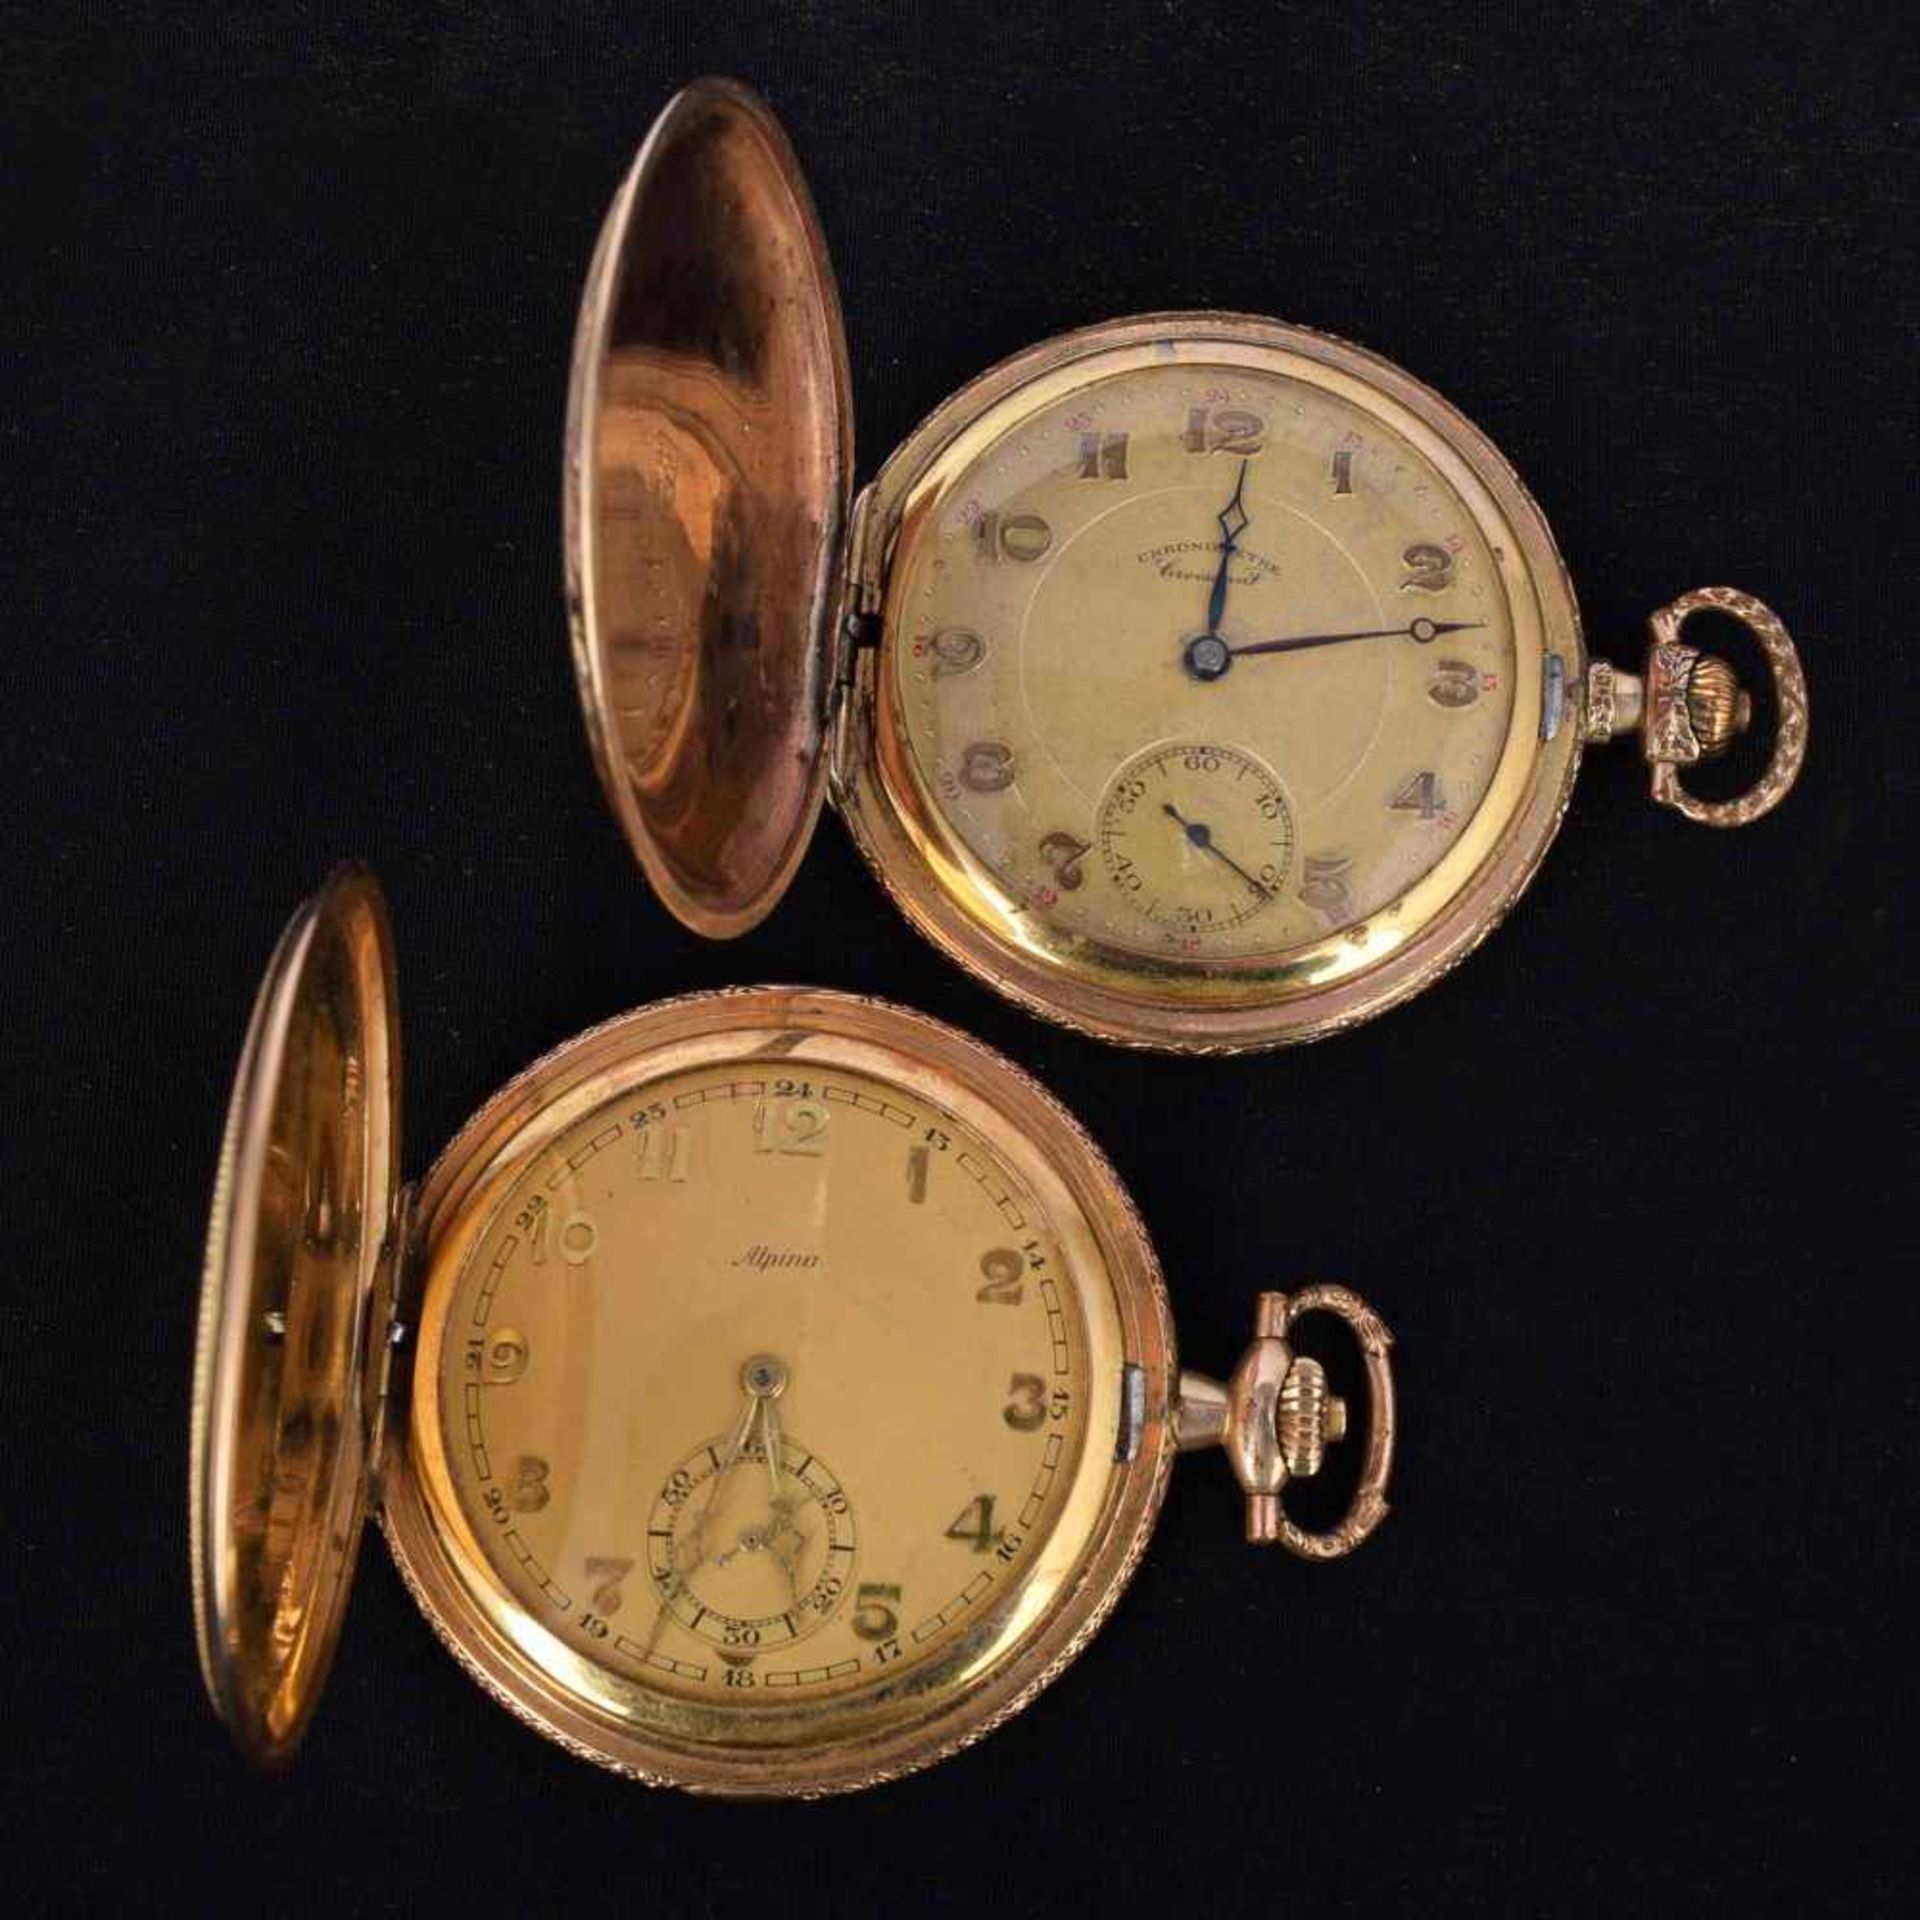 Zwei Sprungdeckeltaschenuhren Metallgehäuse vergoldet, untersch. Hersteller, Stunde, Minute und - Bild 2 aus 3